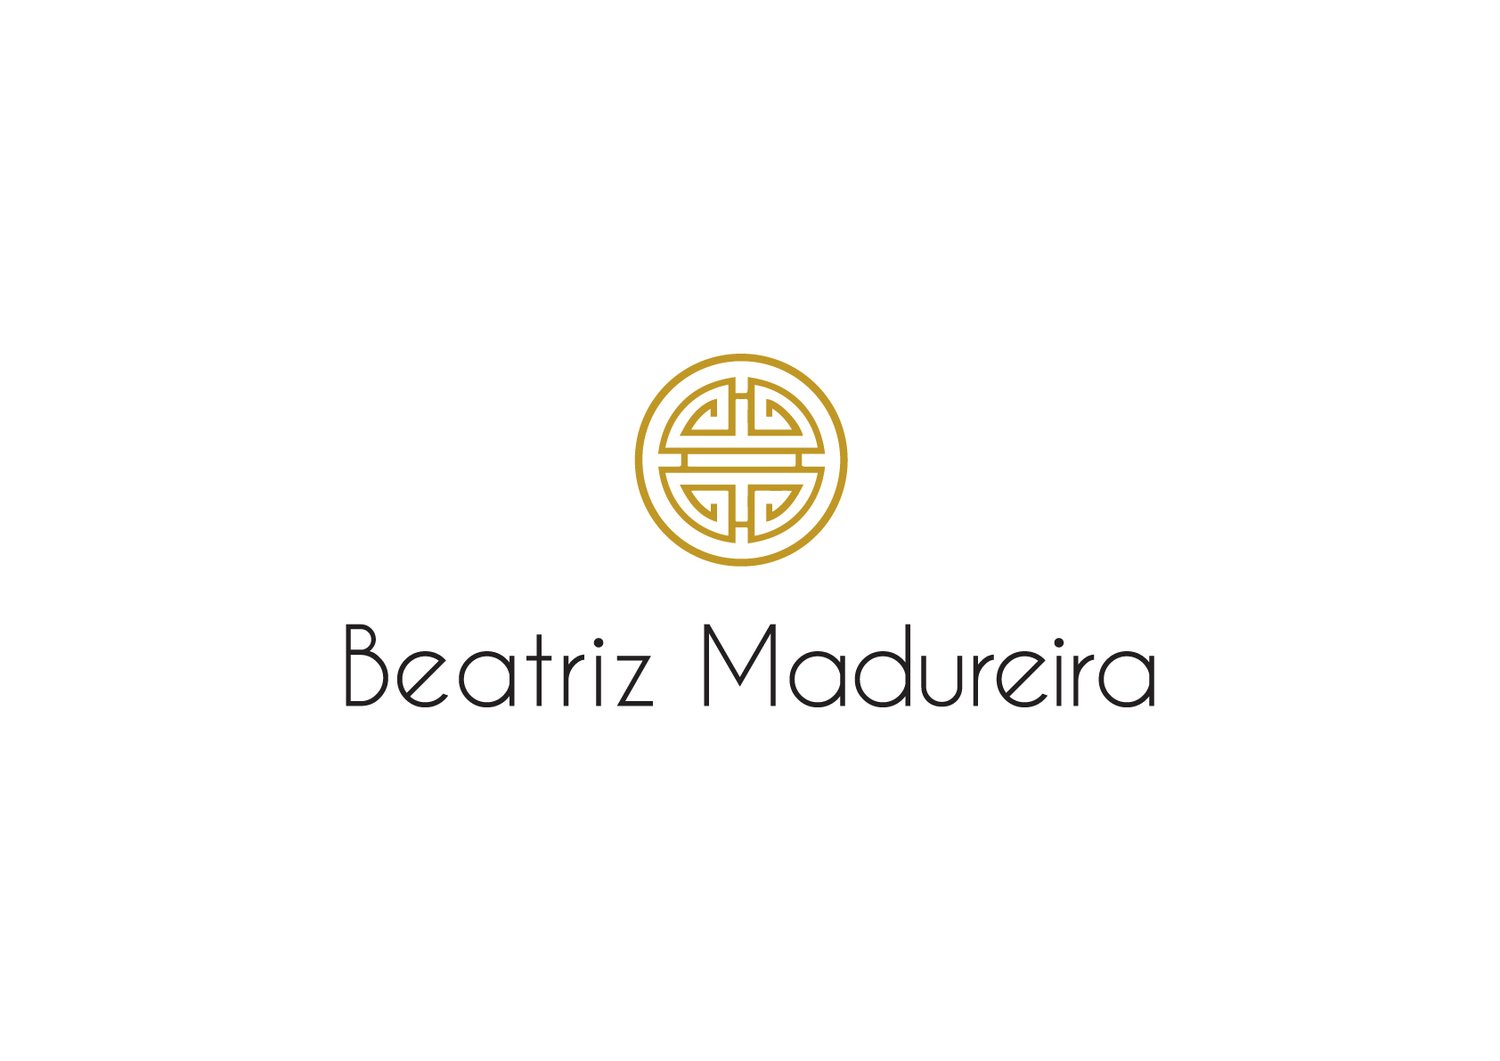 Beatriz Madureira